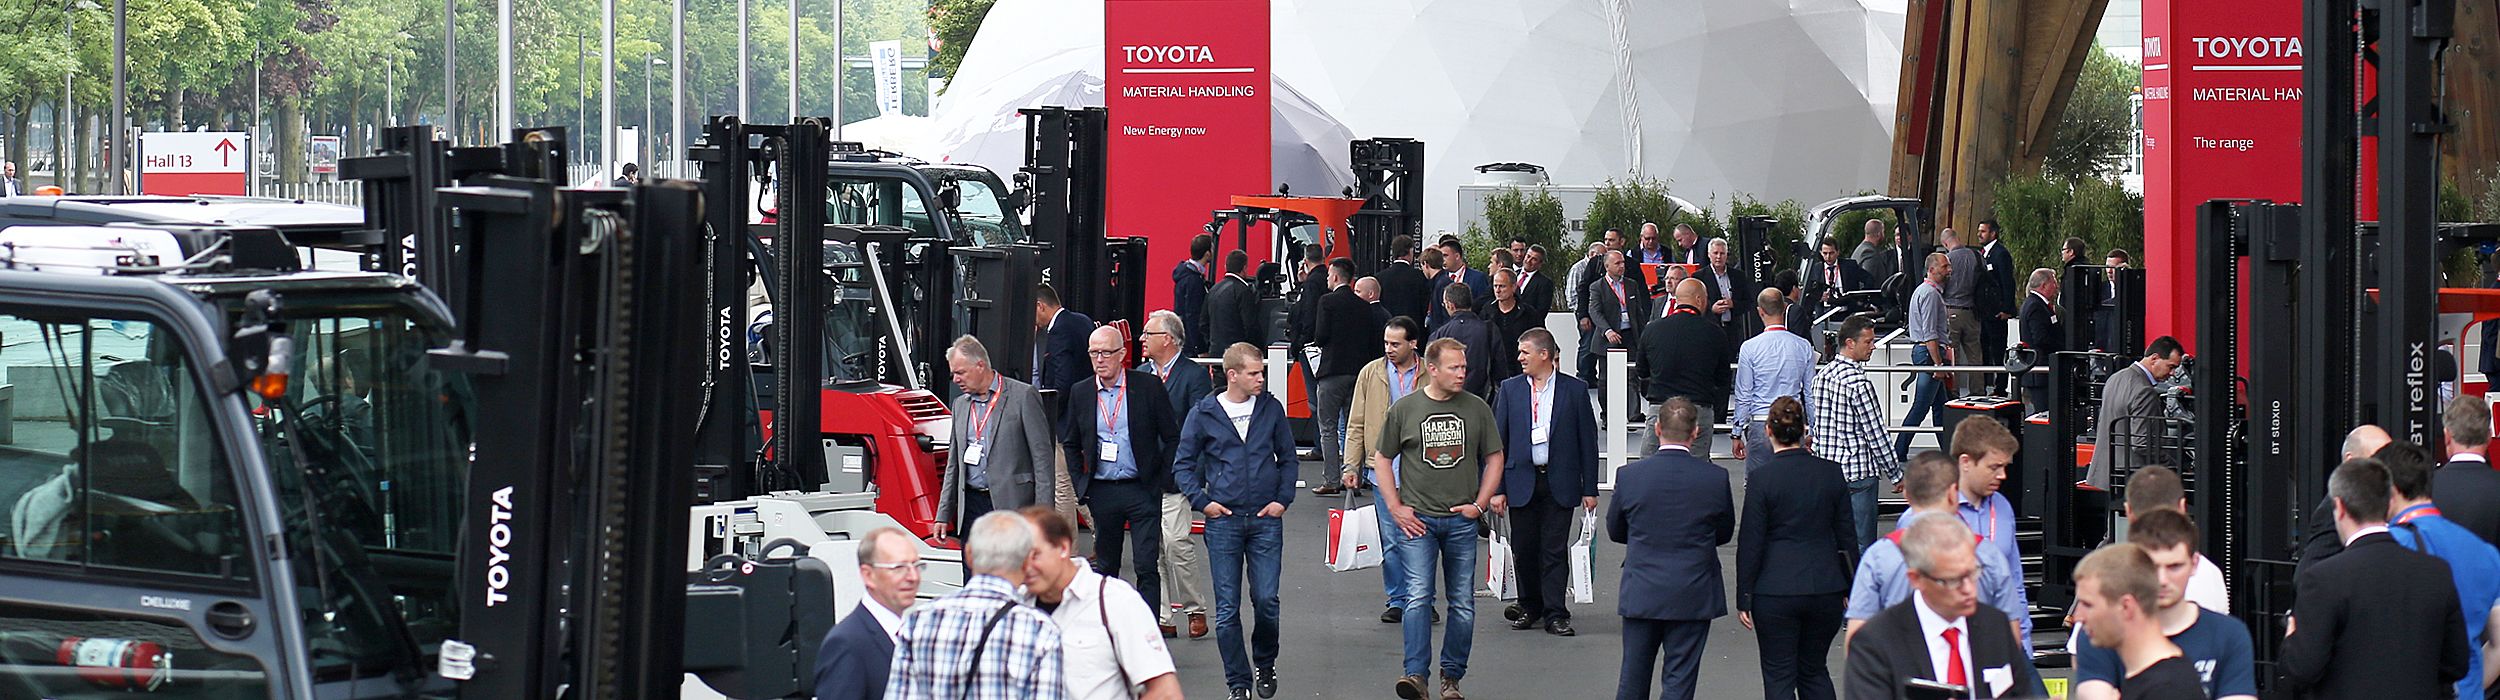 European fairs Toyota Material Handling